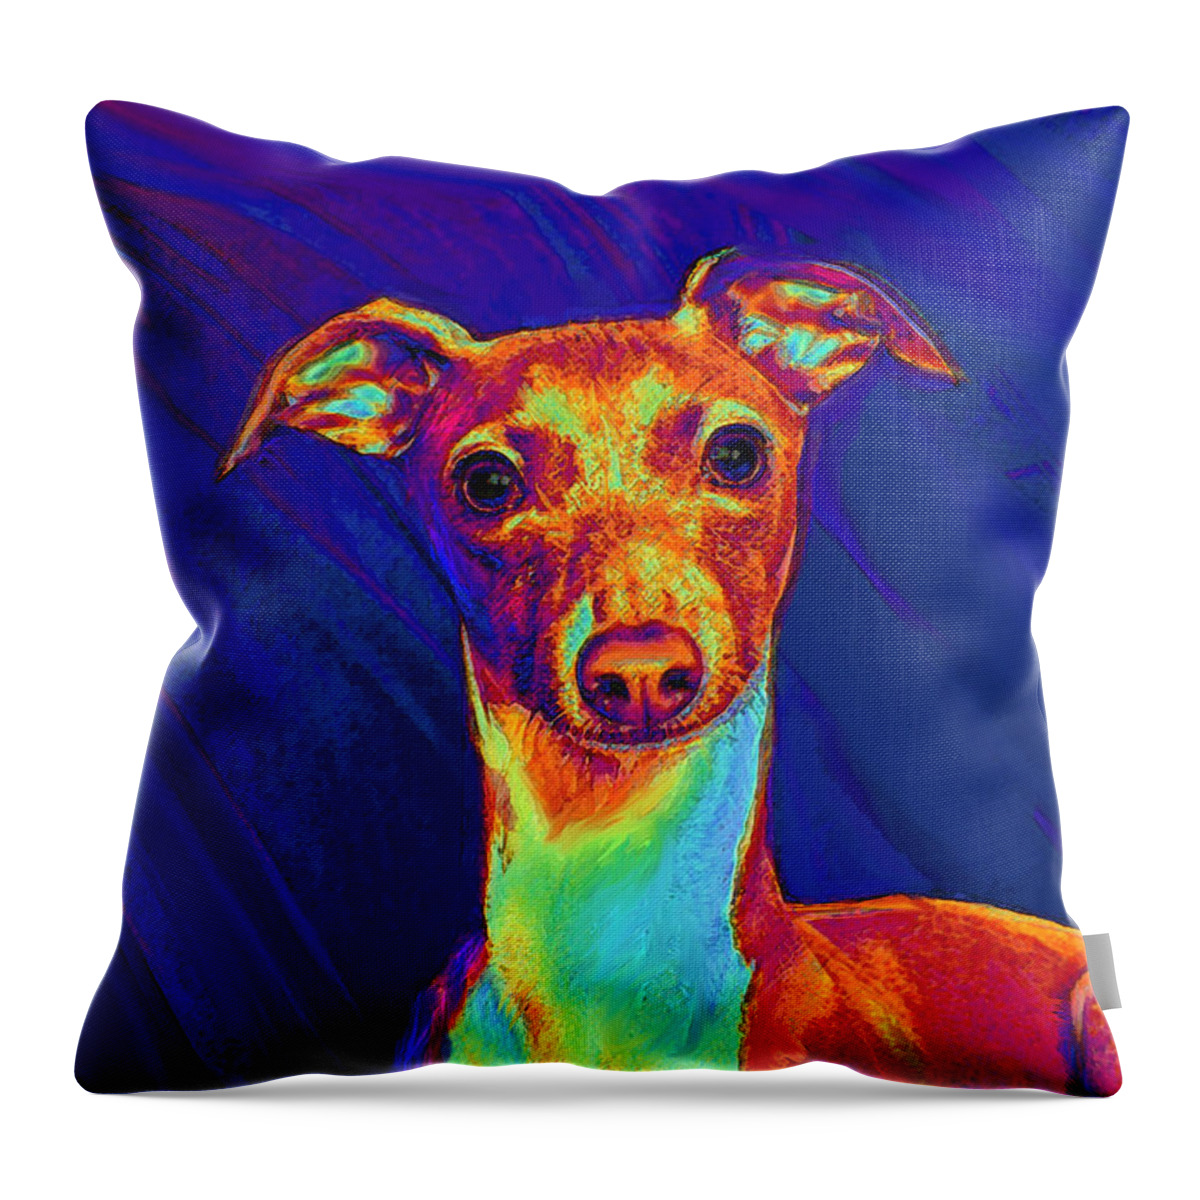 Greyhound Throw Pillow featuring the digital art Italian Greyhound by Jane Schnetlage